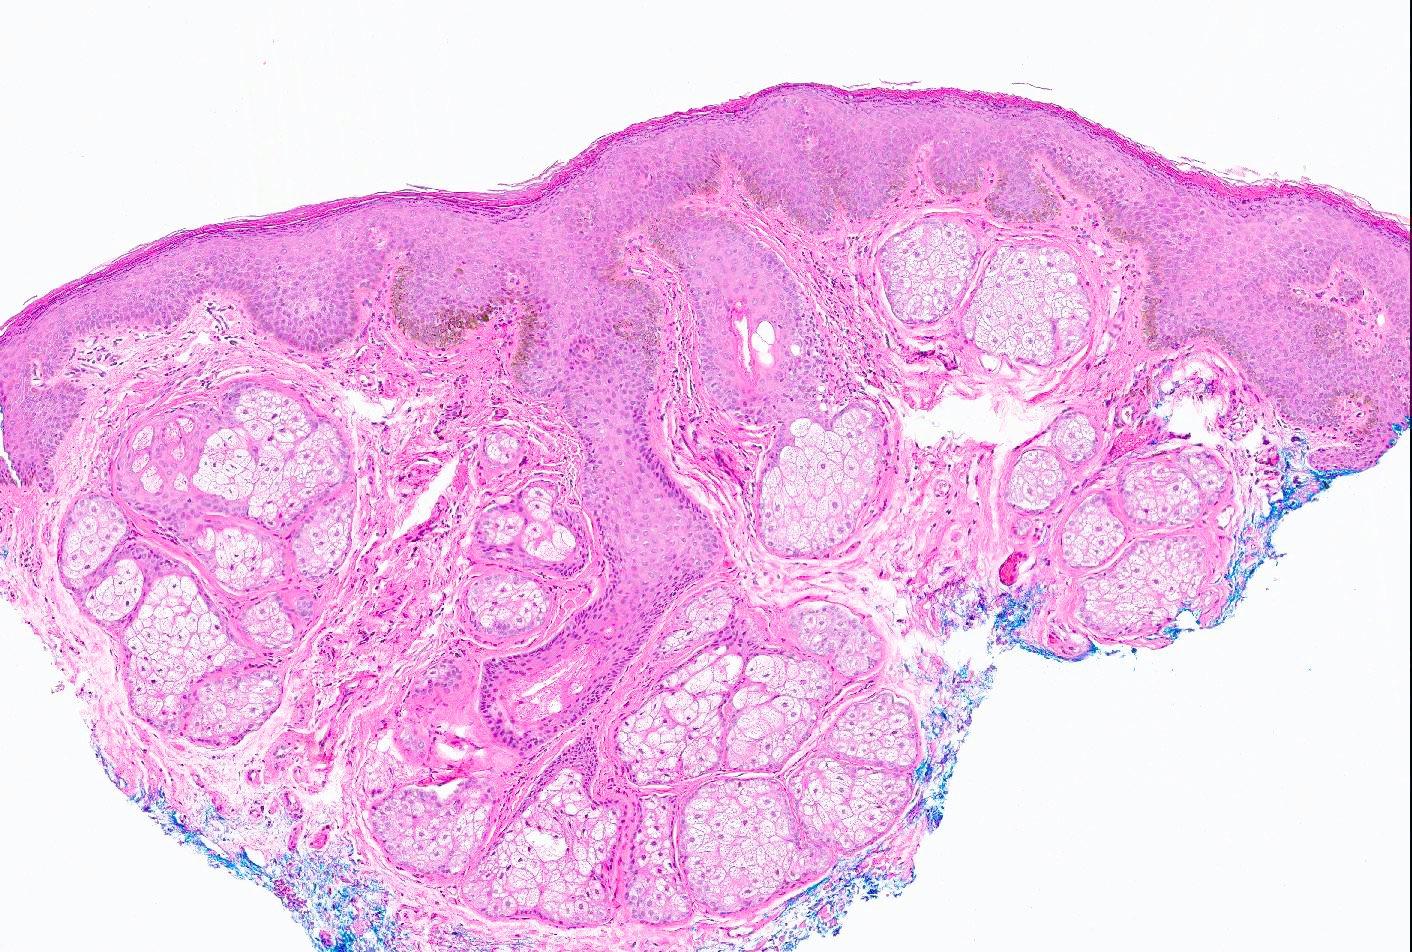 Mucosal melanotic macule